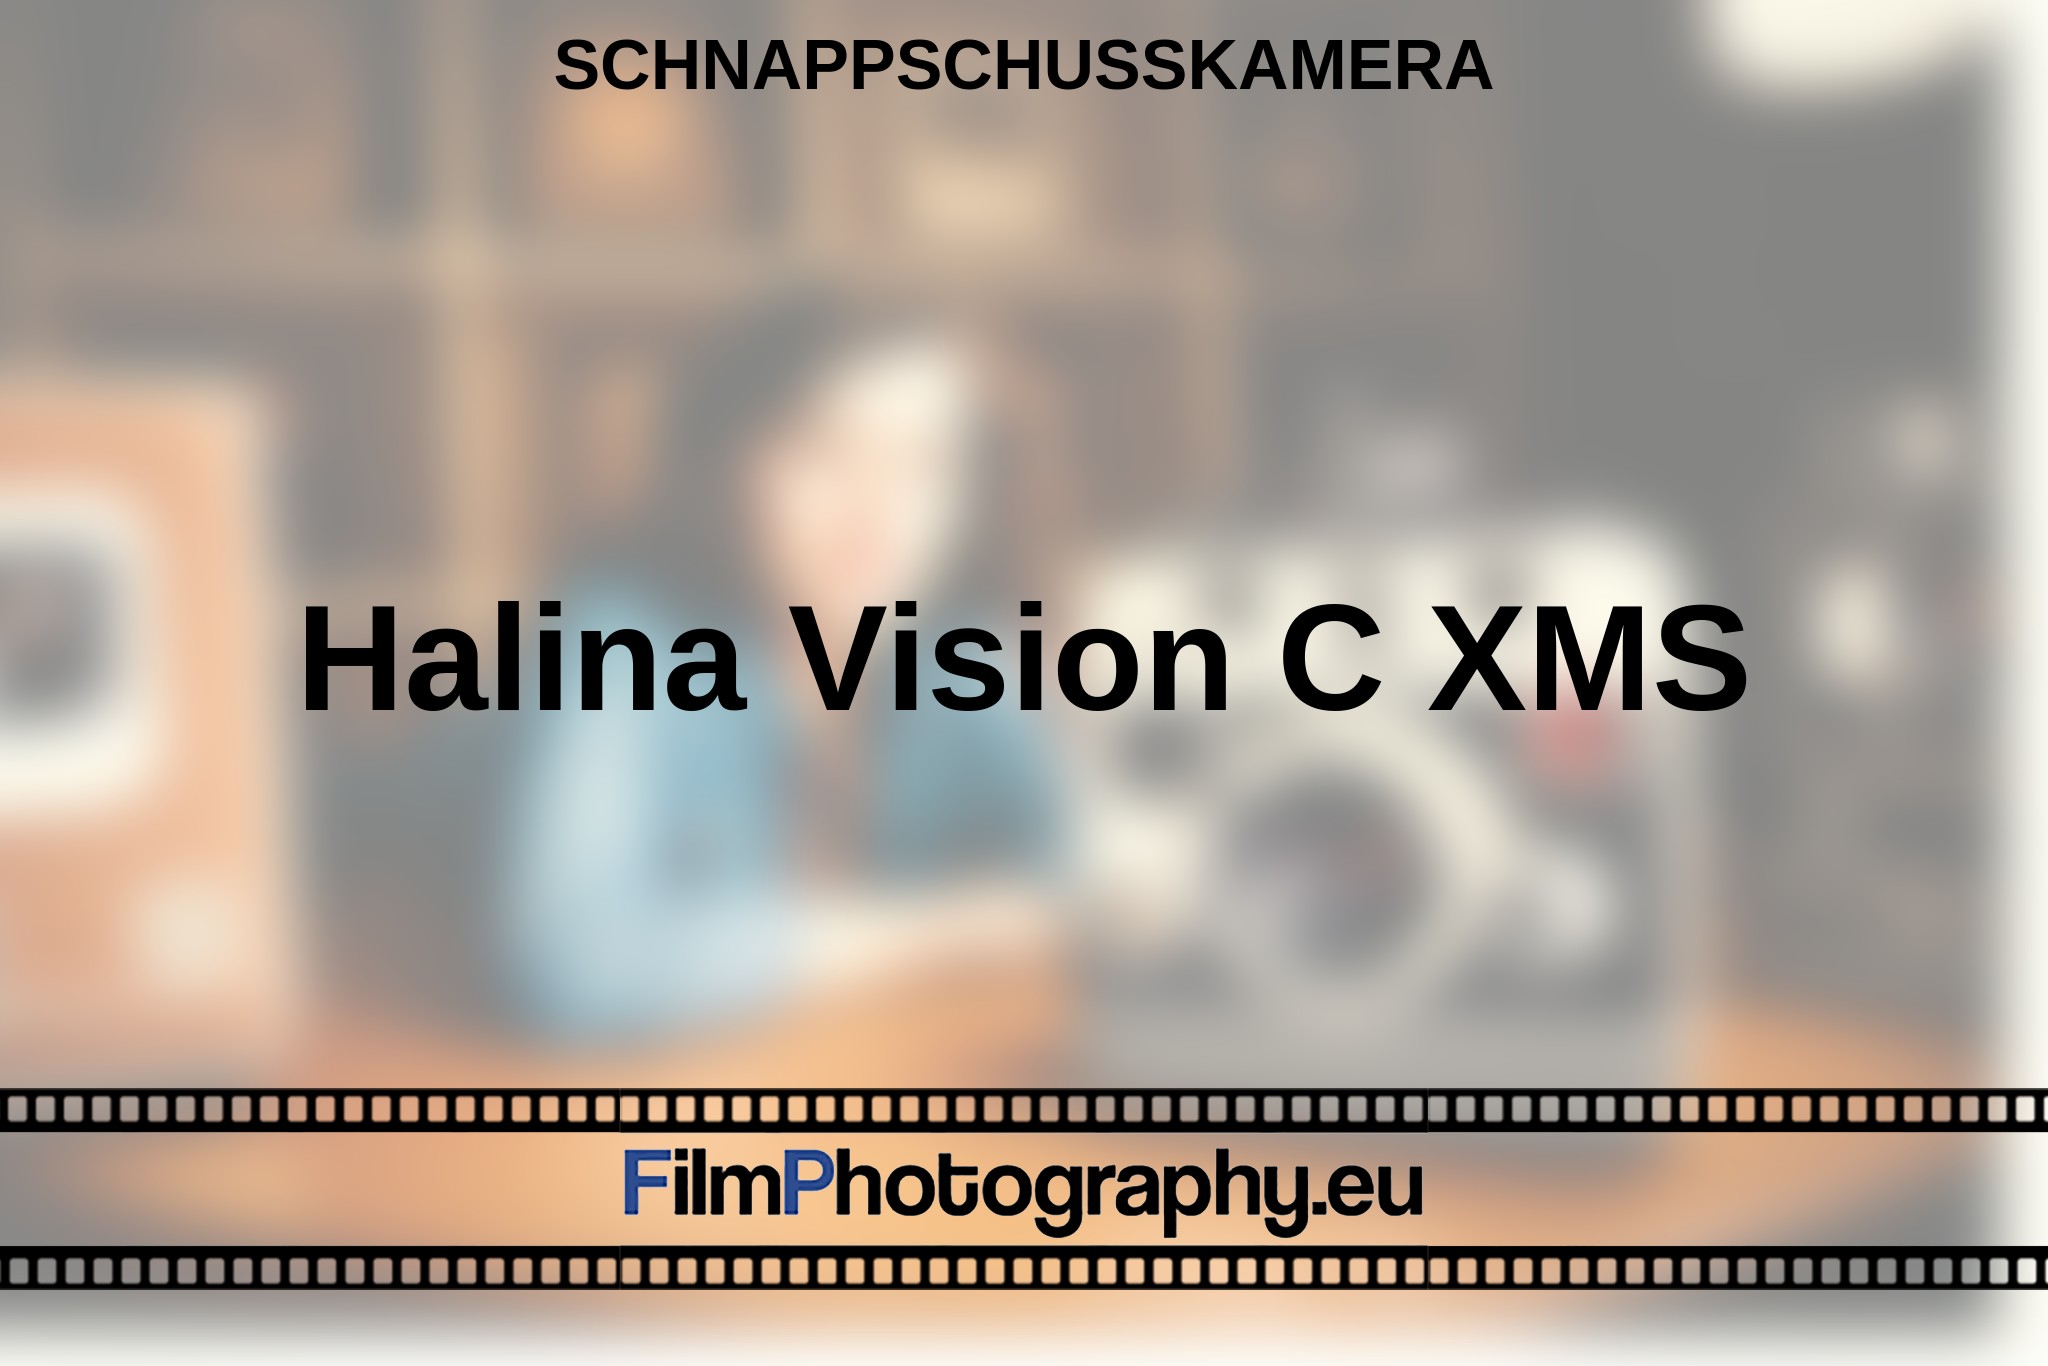 halina-vision-c-xms-schnappschusskamera-bnv.jpg